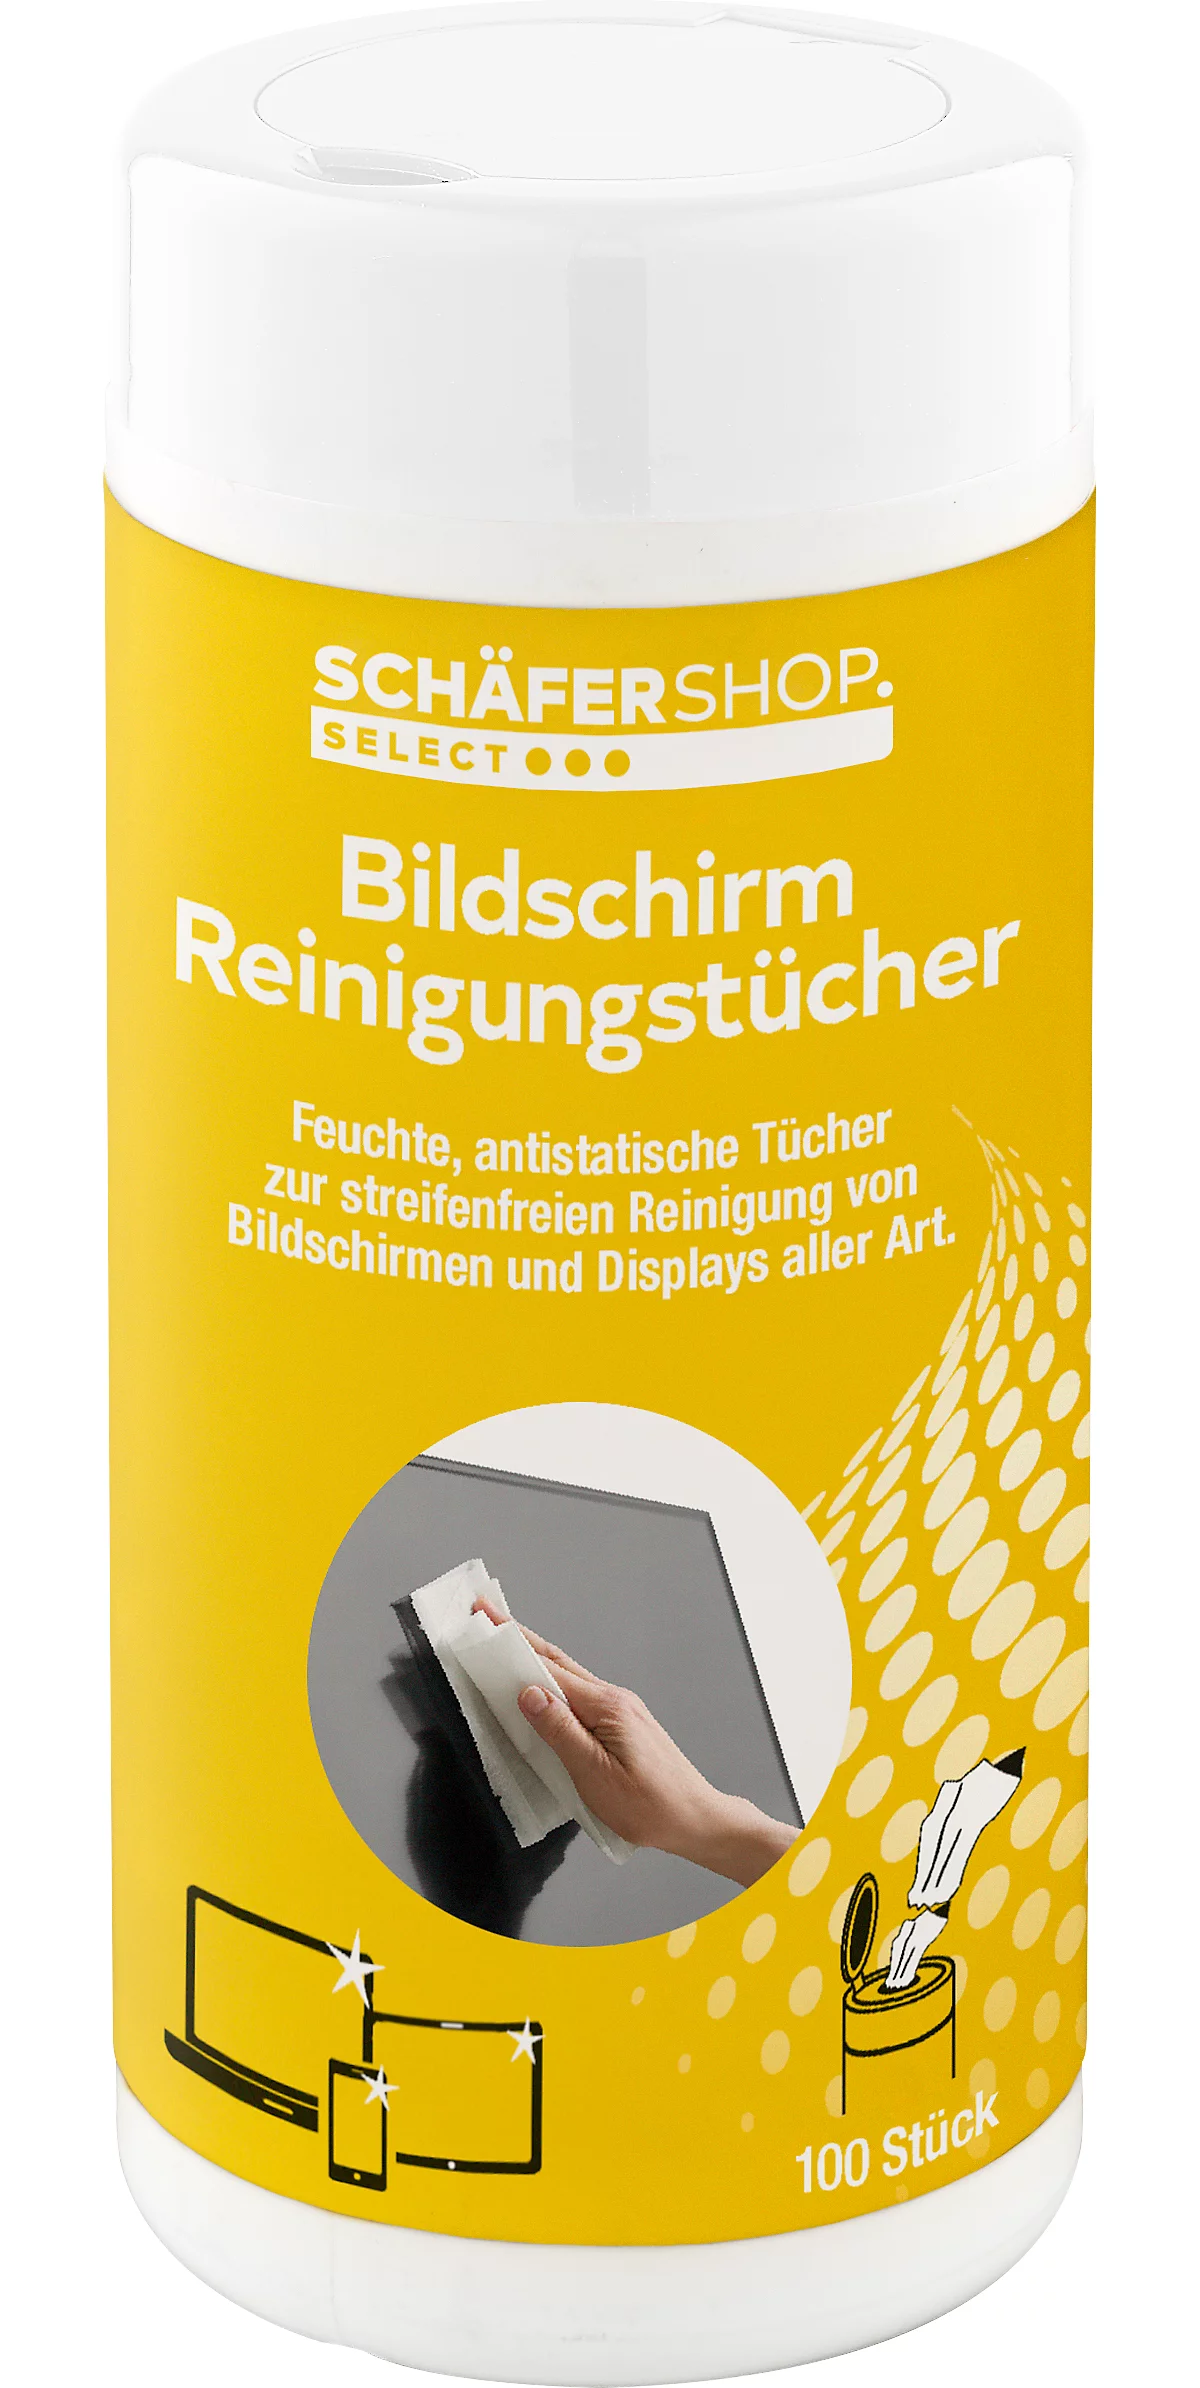 Schäfer Shop Select toallitas para la limpieza de pantallas, húmedas, 100 unidades